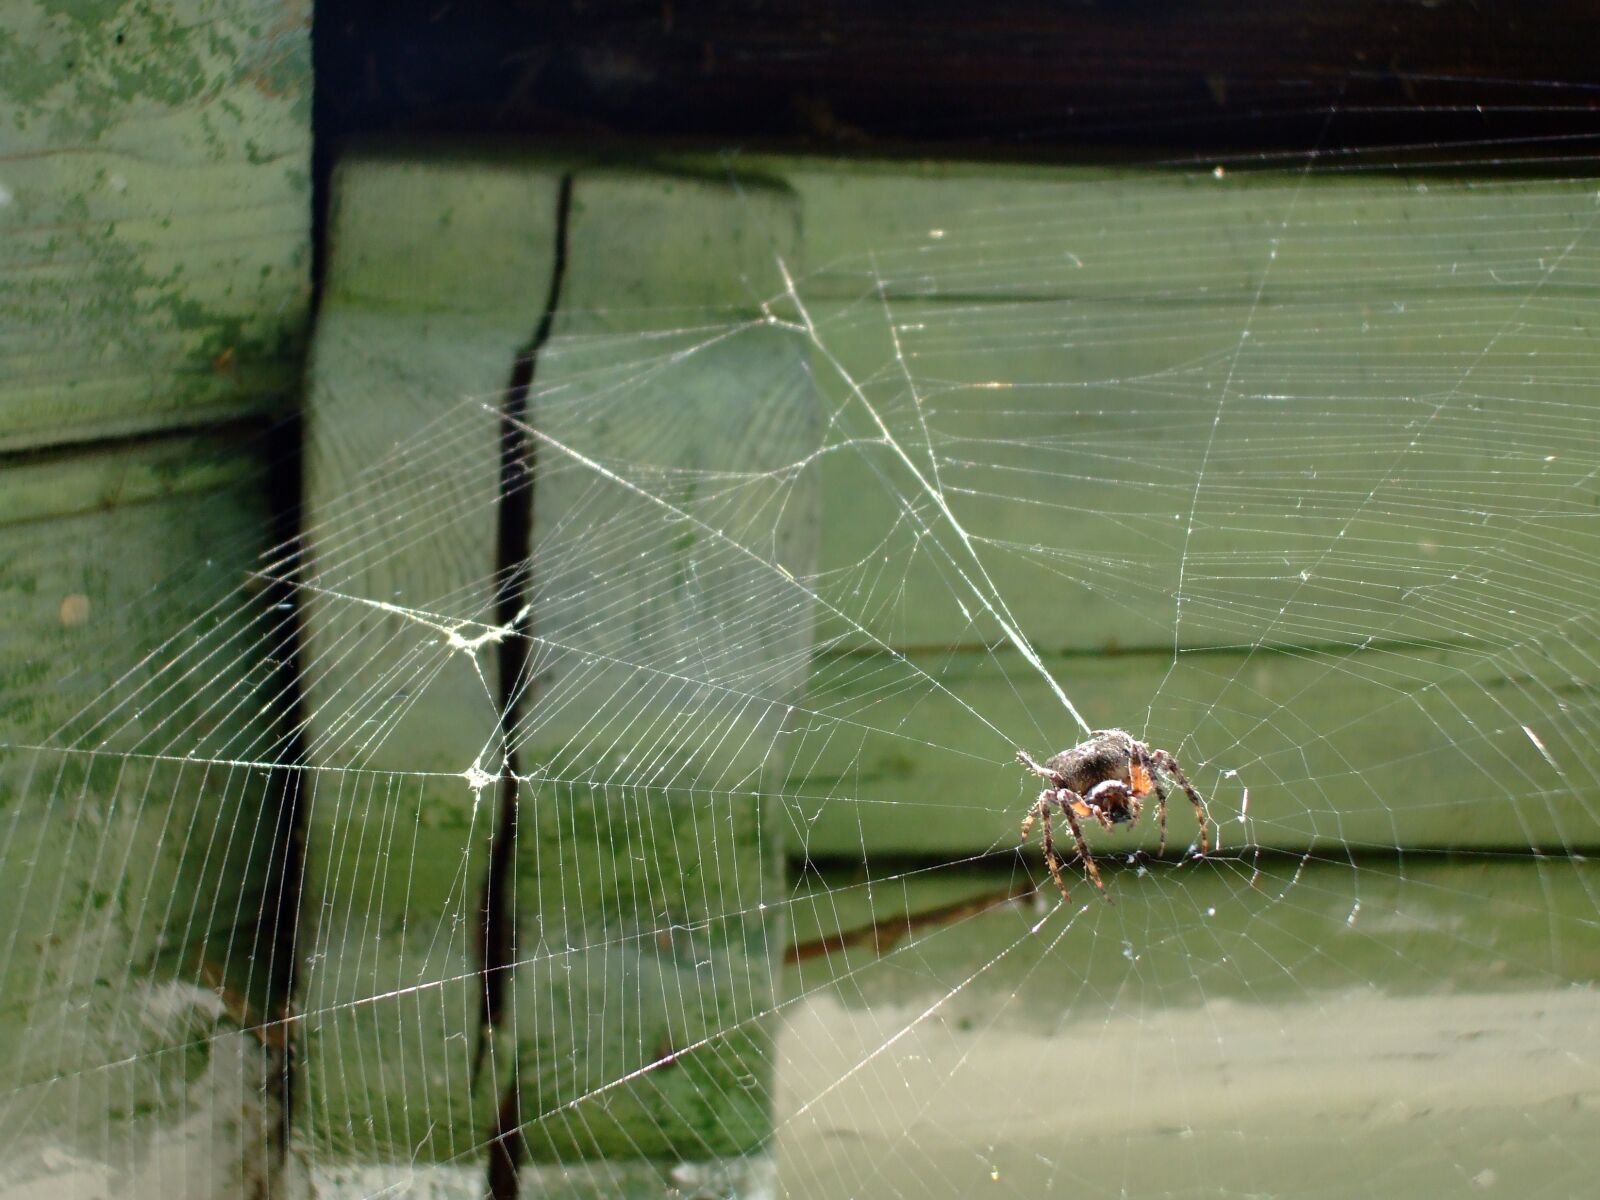 Fujifilm FinePix A800 sample photo. Spiderweb, spider, web photography